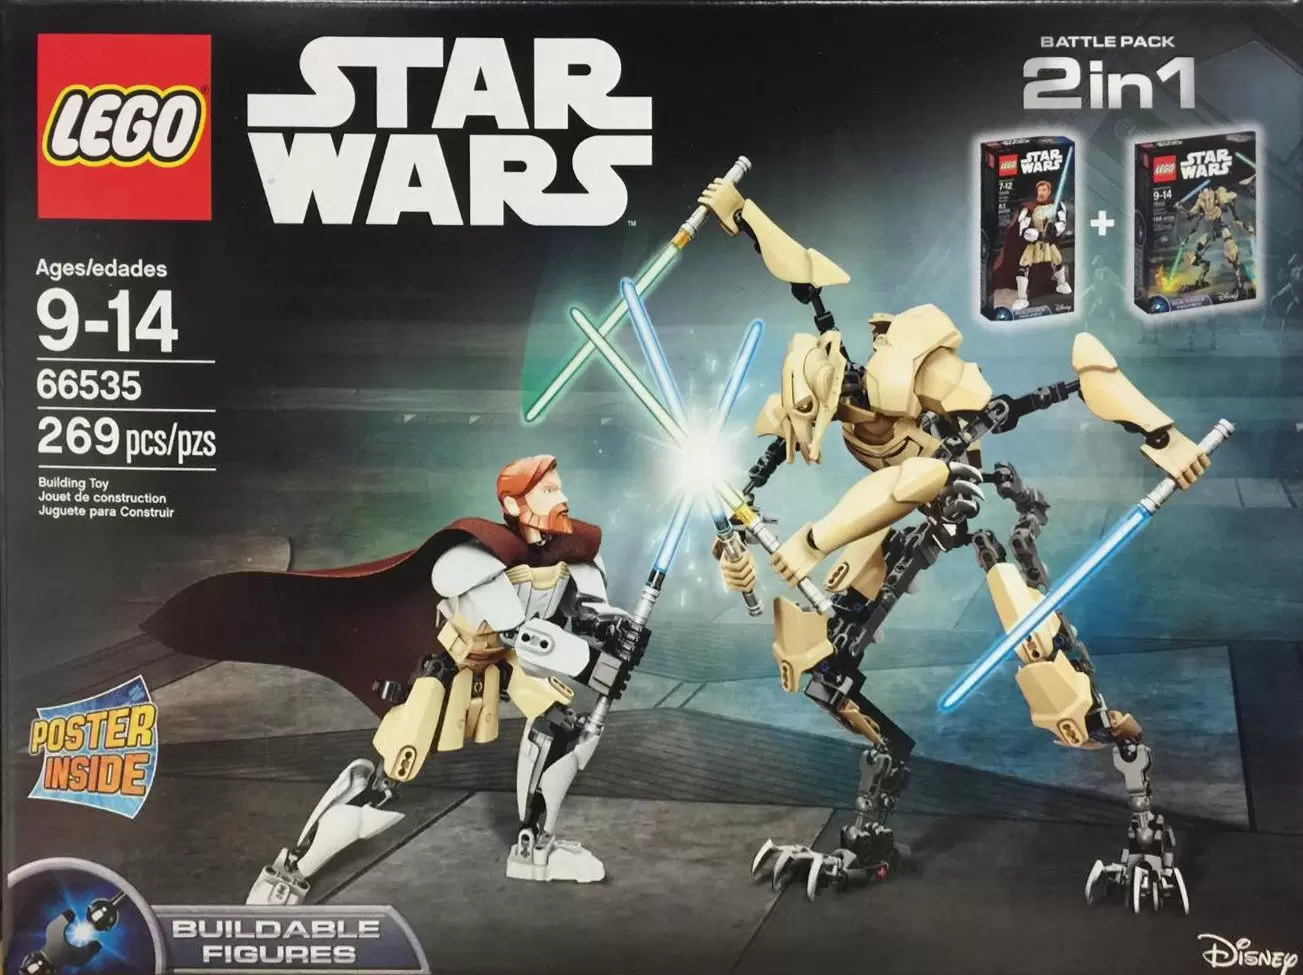 LEGO Star Wars - Battle Pack 2 in 1